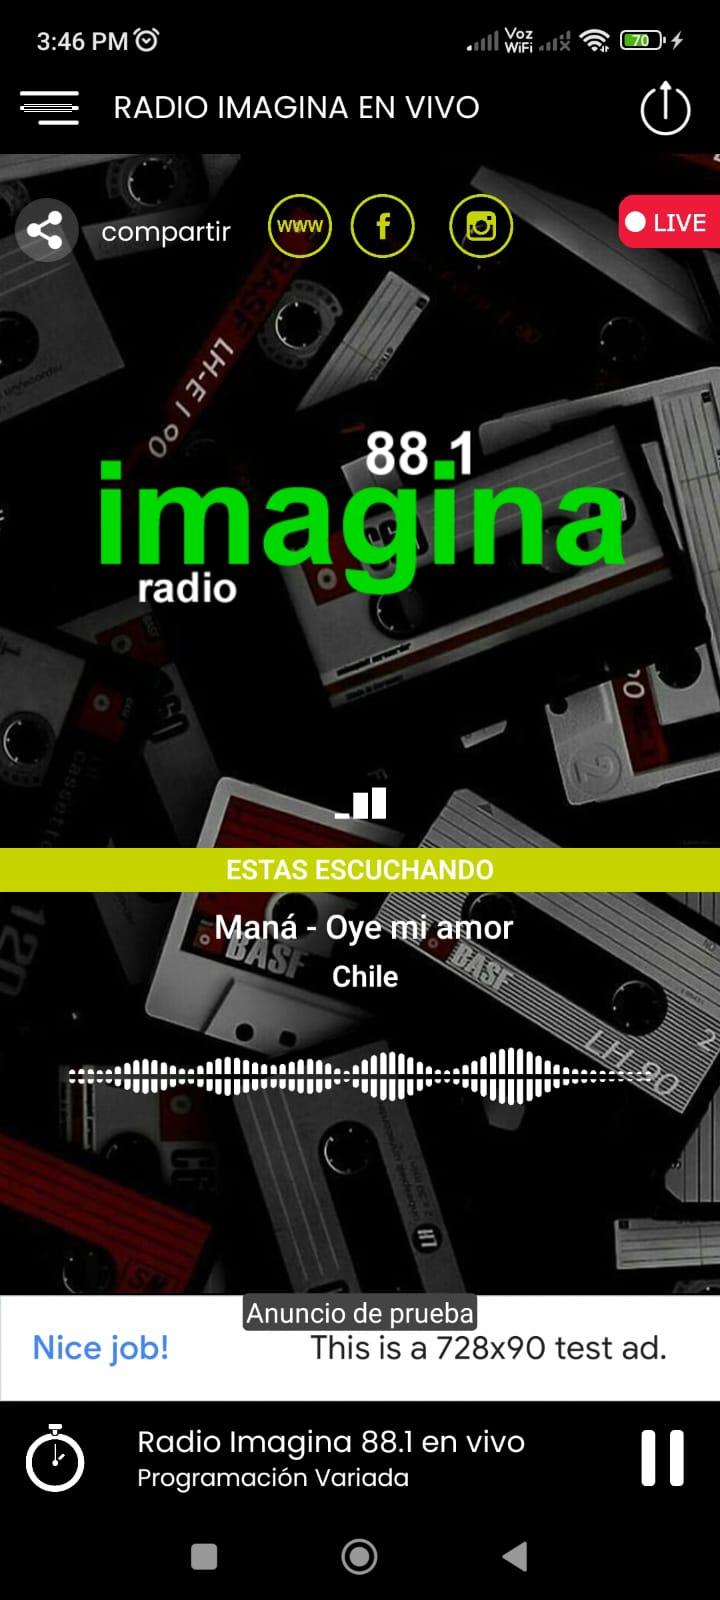 Radio Imagina en vivo 88.1 APK for Android Download